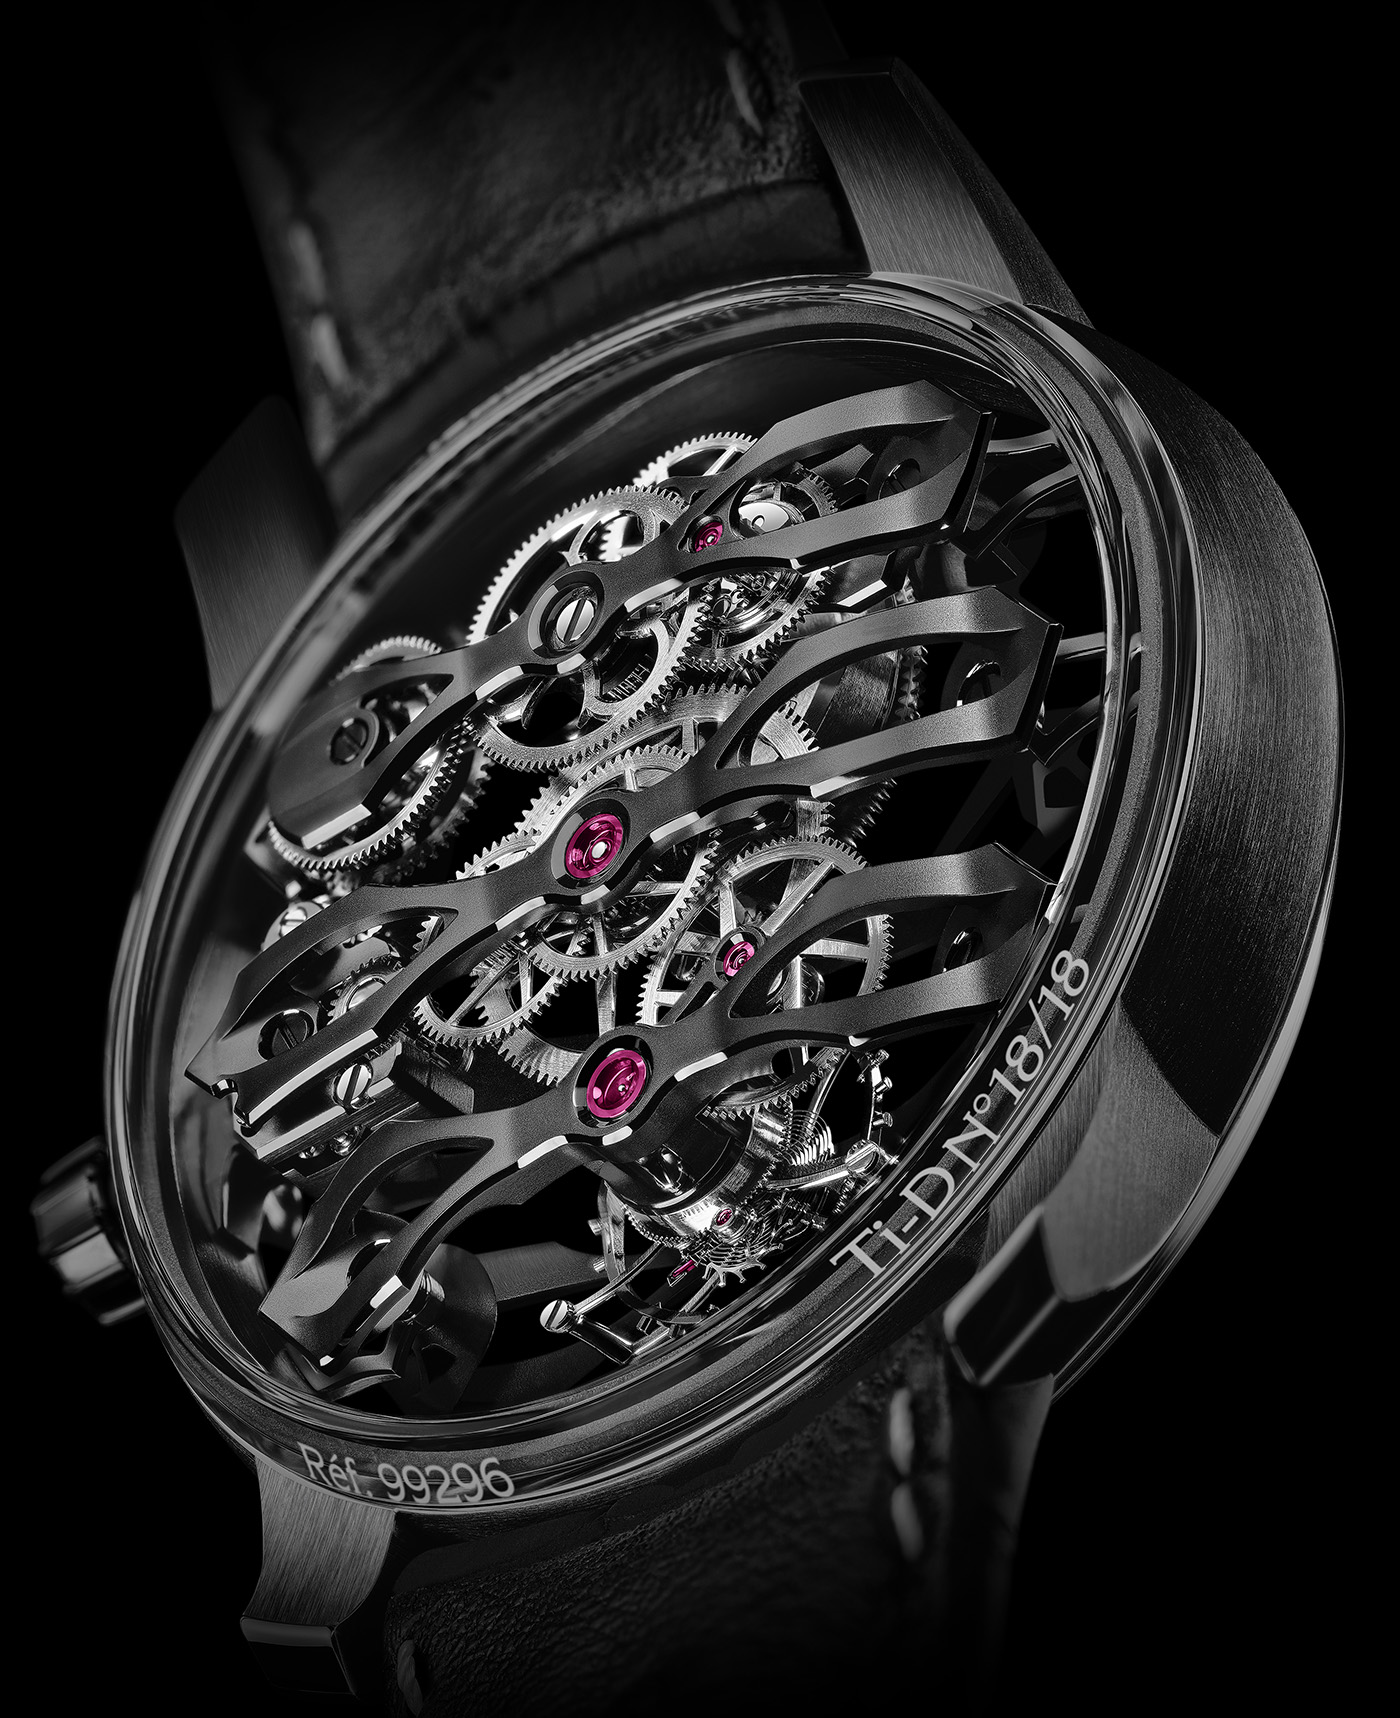 Girard-Perregaux представляет ограниченную модель наручных часов Aston Martin Edition